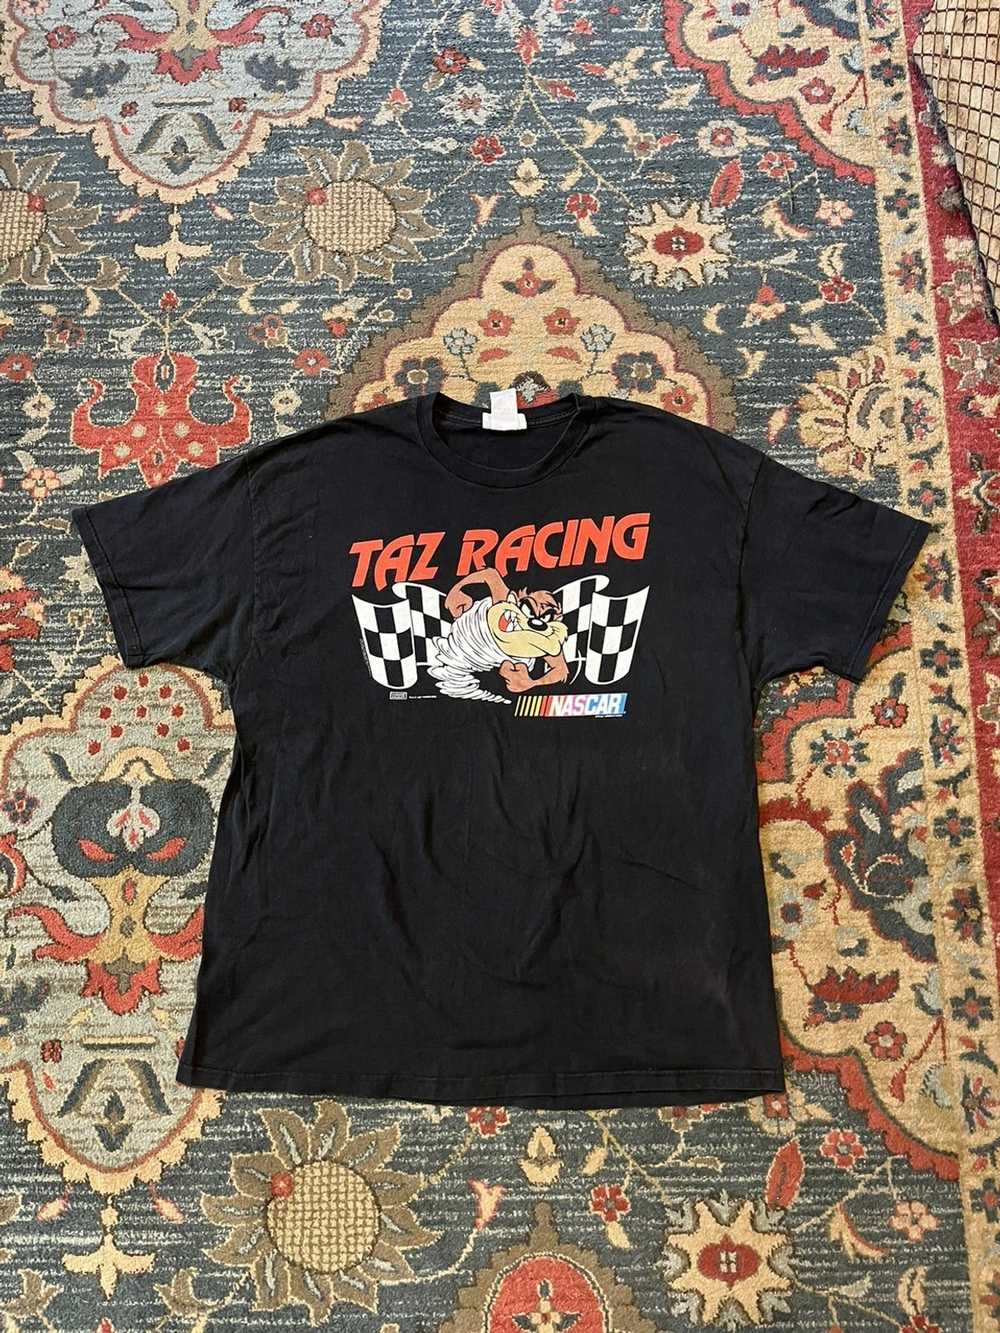 NASCAR × Vintage Vintage Nascar Taz shirt - image 1